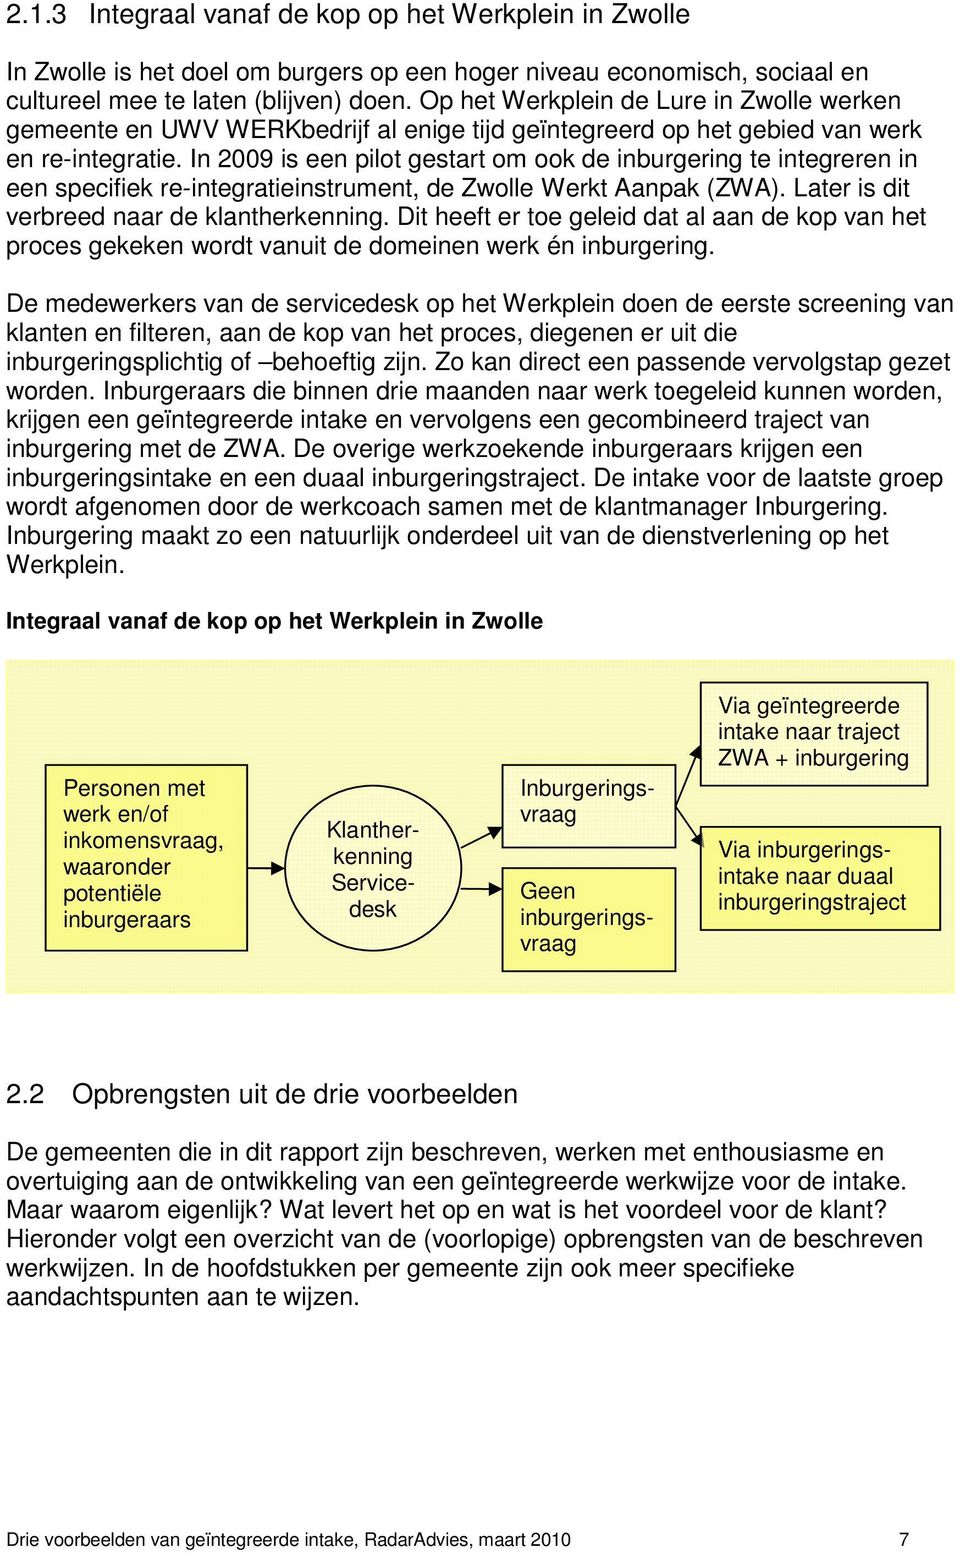 In 2009 is een pilot gestart om ook de inburgering te integreren in een specifiek re-integratieinstrument, de Zwolle Werkt Aanpak (ZWA). Later is dit verbreed naar de klantherkenning.